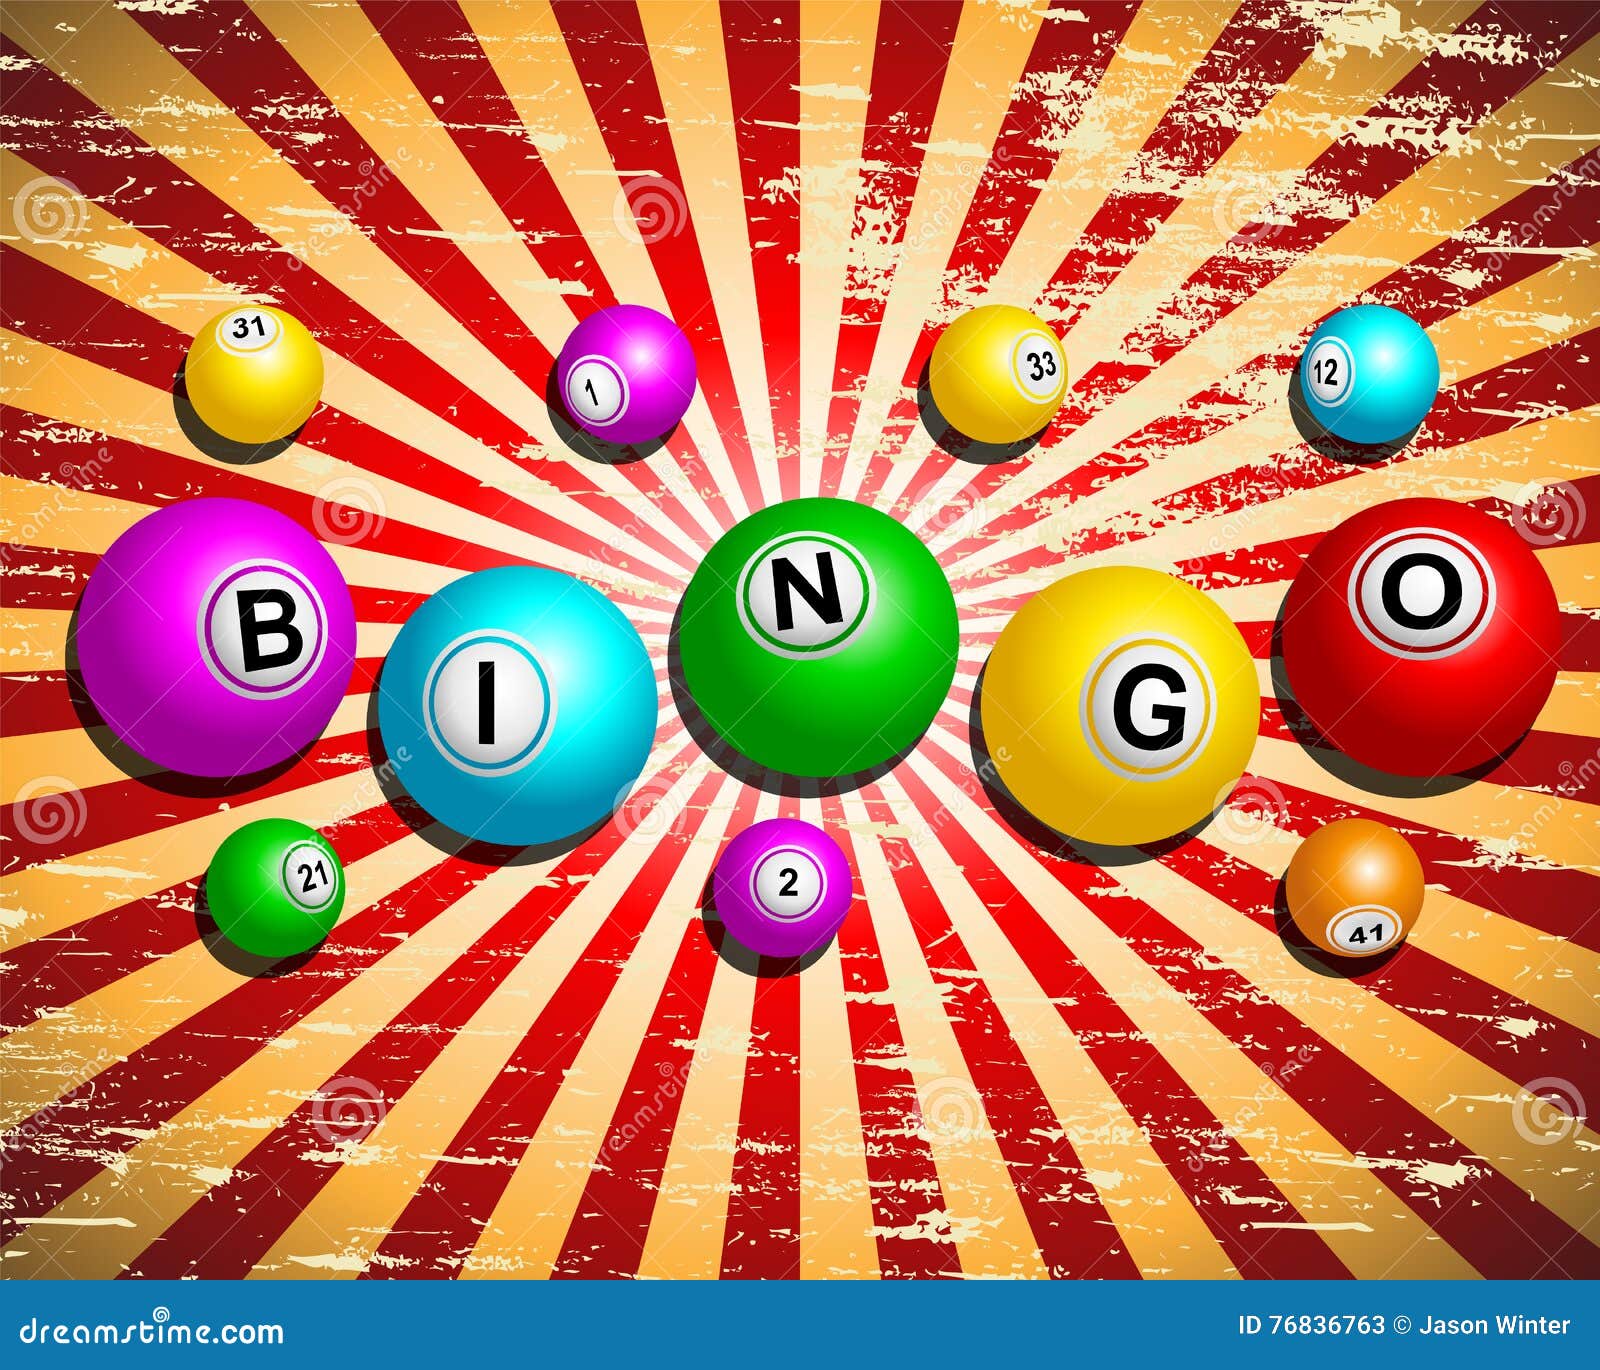 bingo online grátis com prêmios